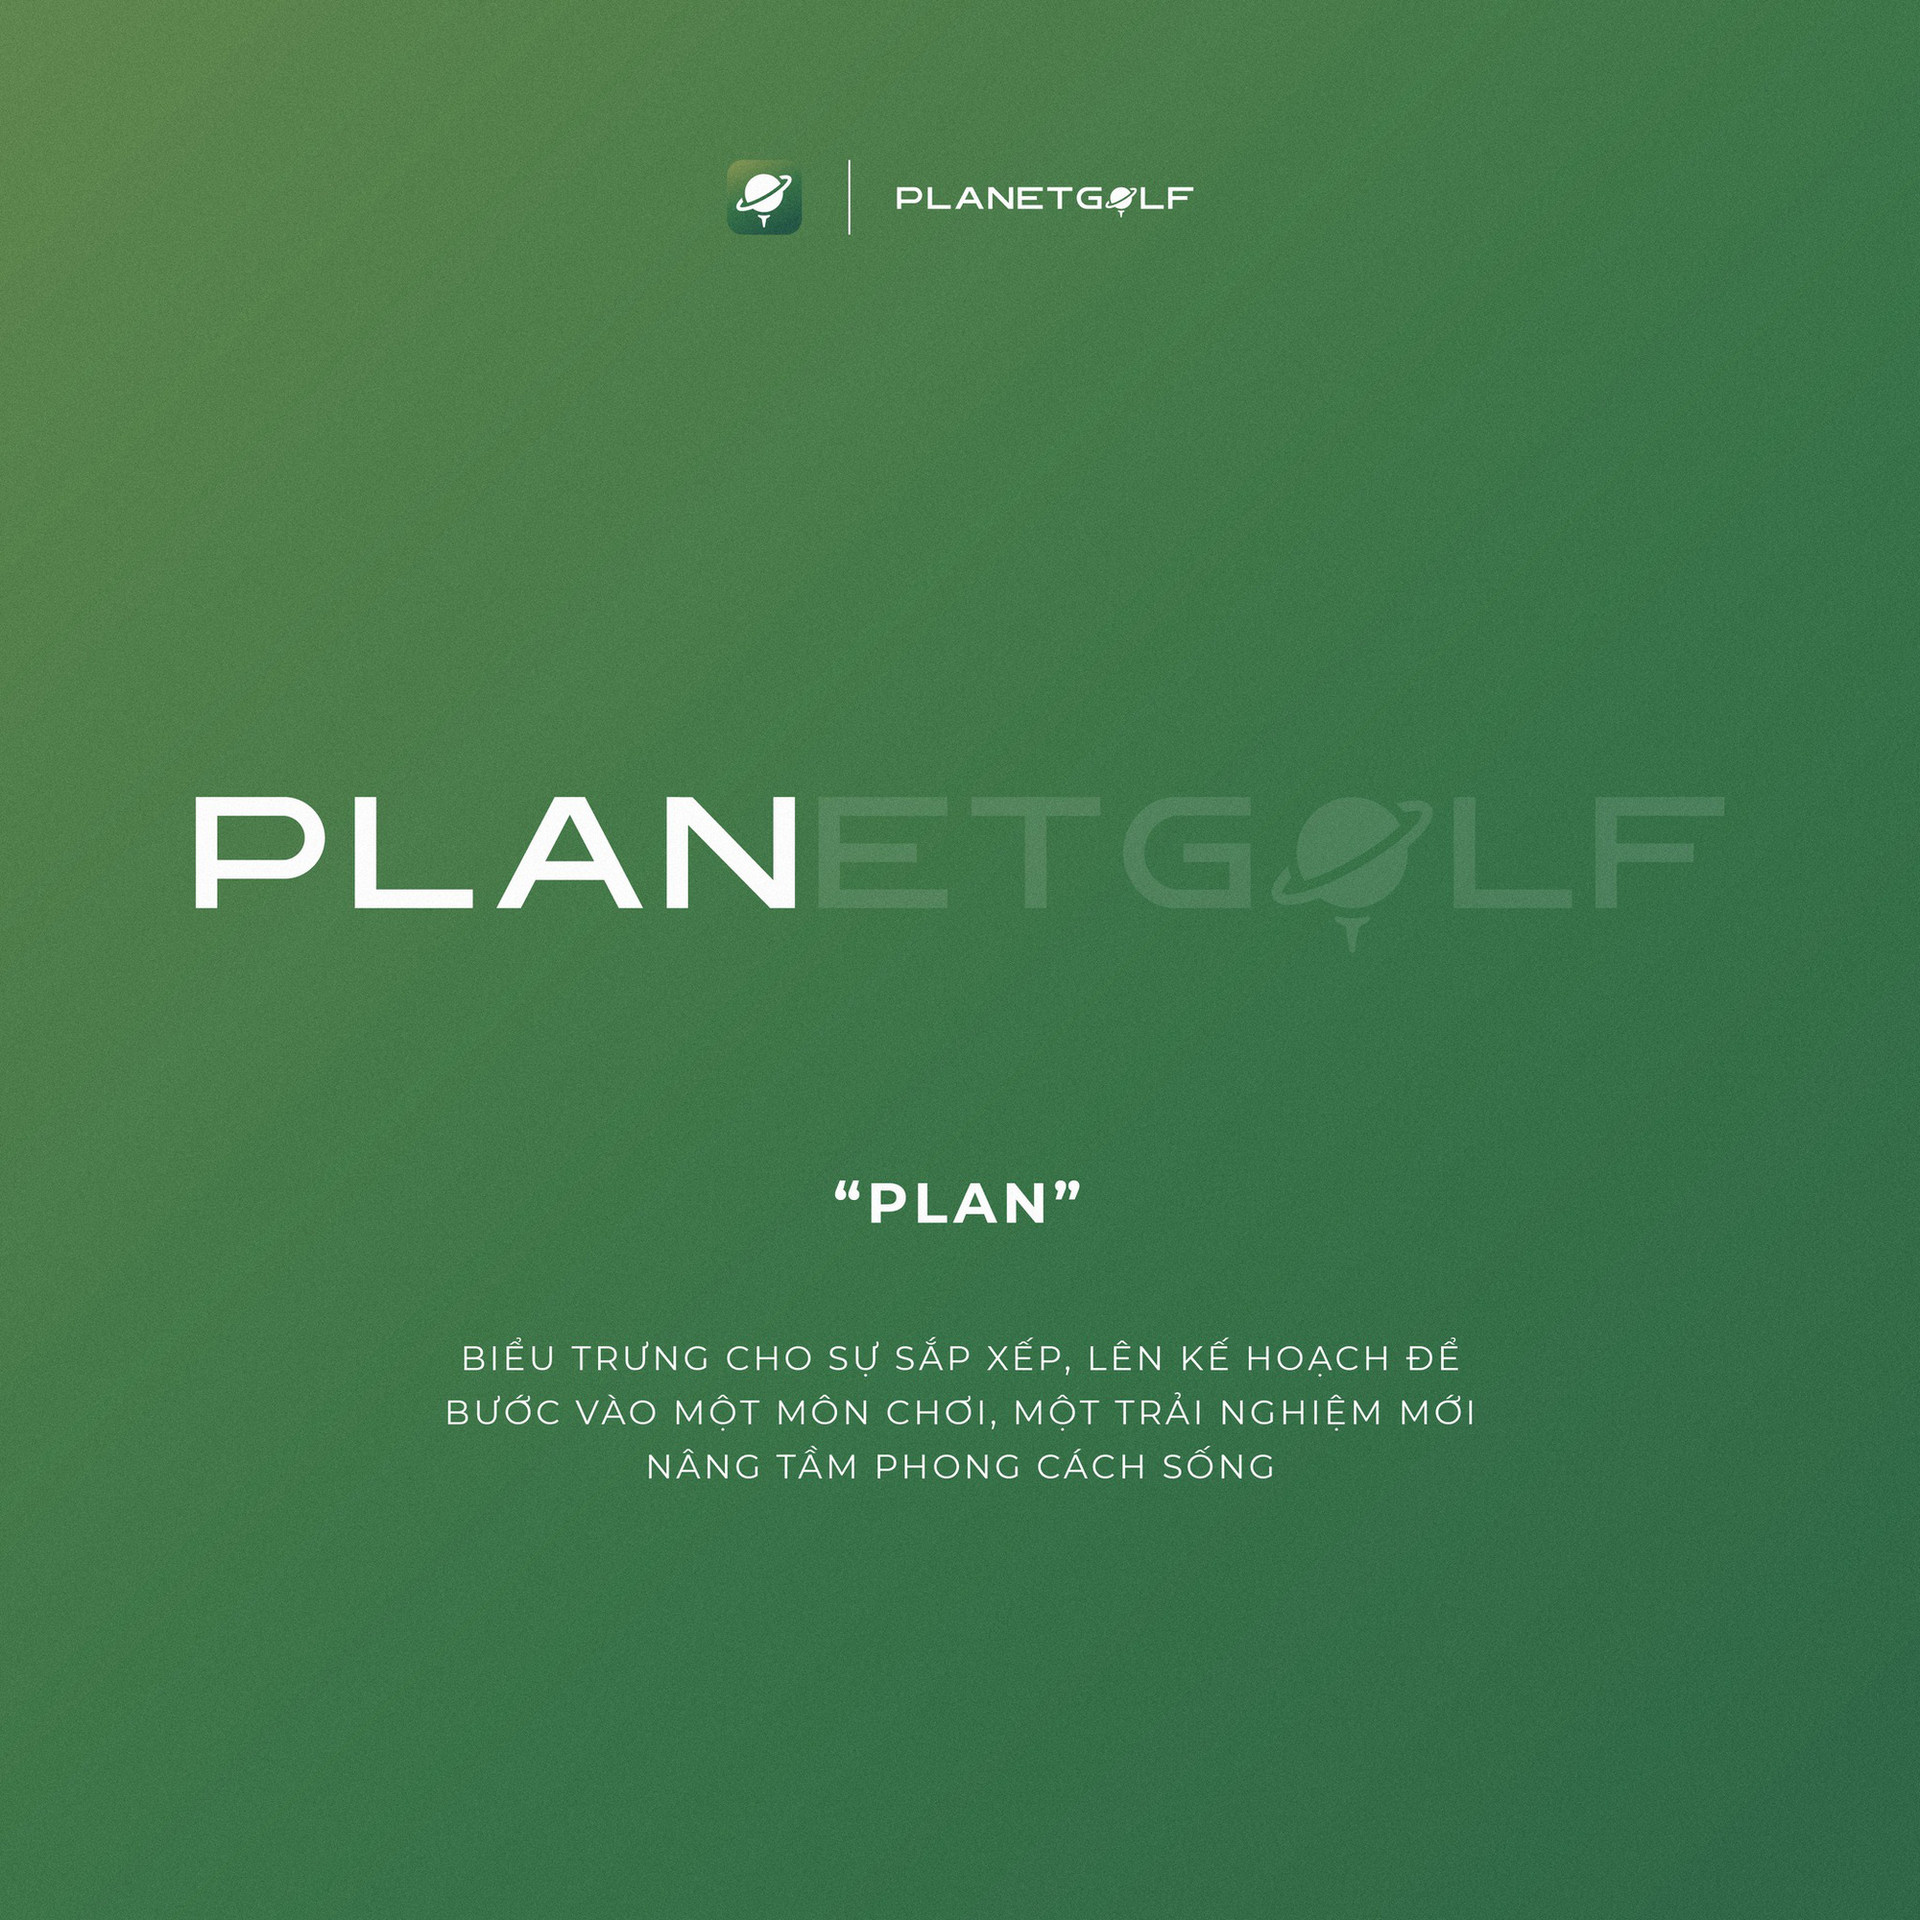 Ra mắt ứng dụng kết nối huấn luyện viên và học viên có tên PLANETGOLF - Ảnh 1.